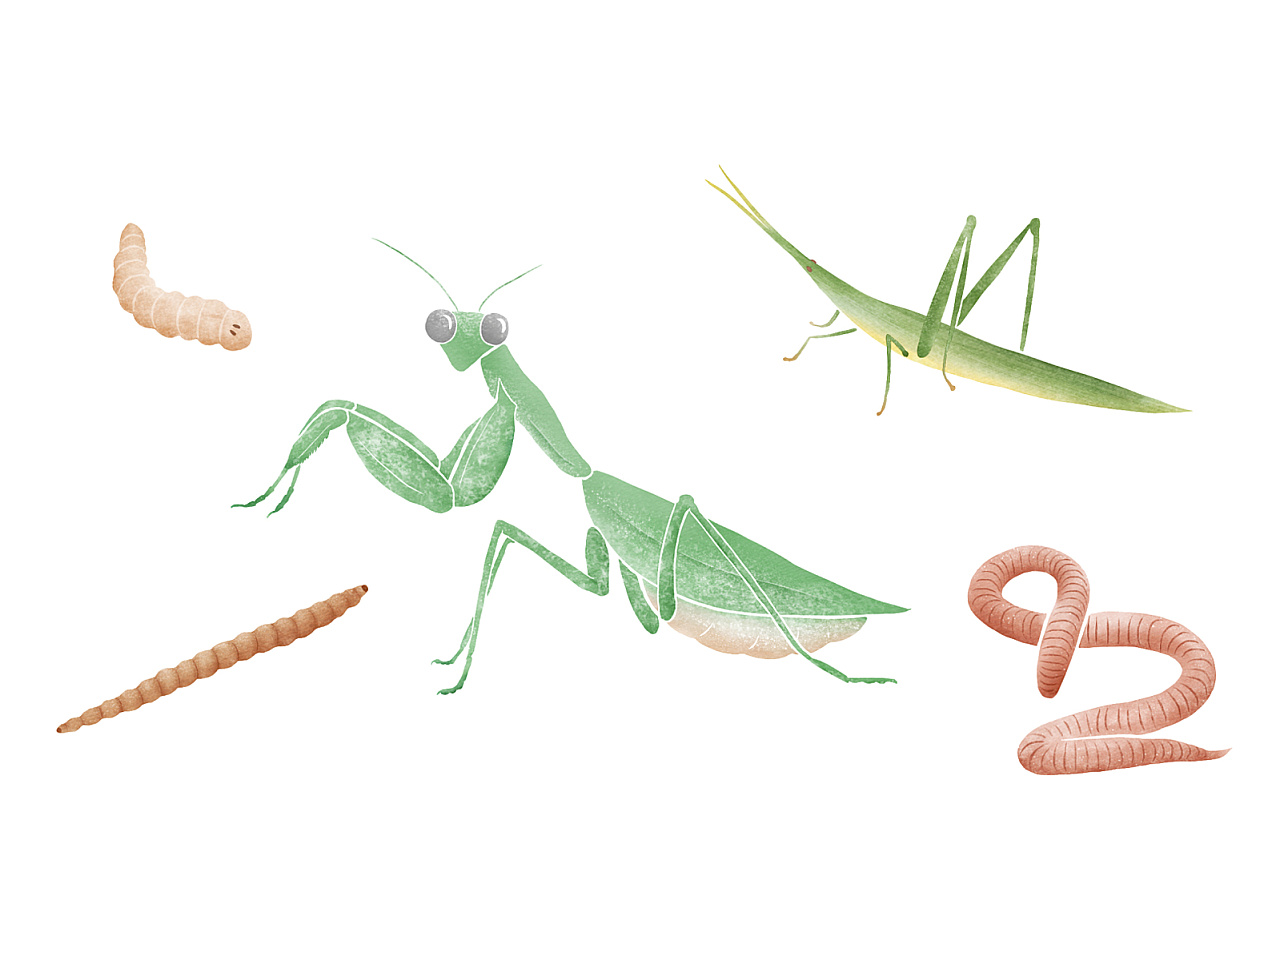 20 亿人都在吃，虫子可能会比寿司更流行 | 近未来 ㉑_昆虫